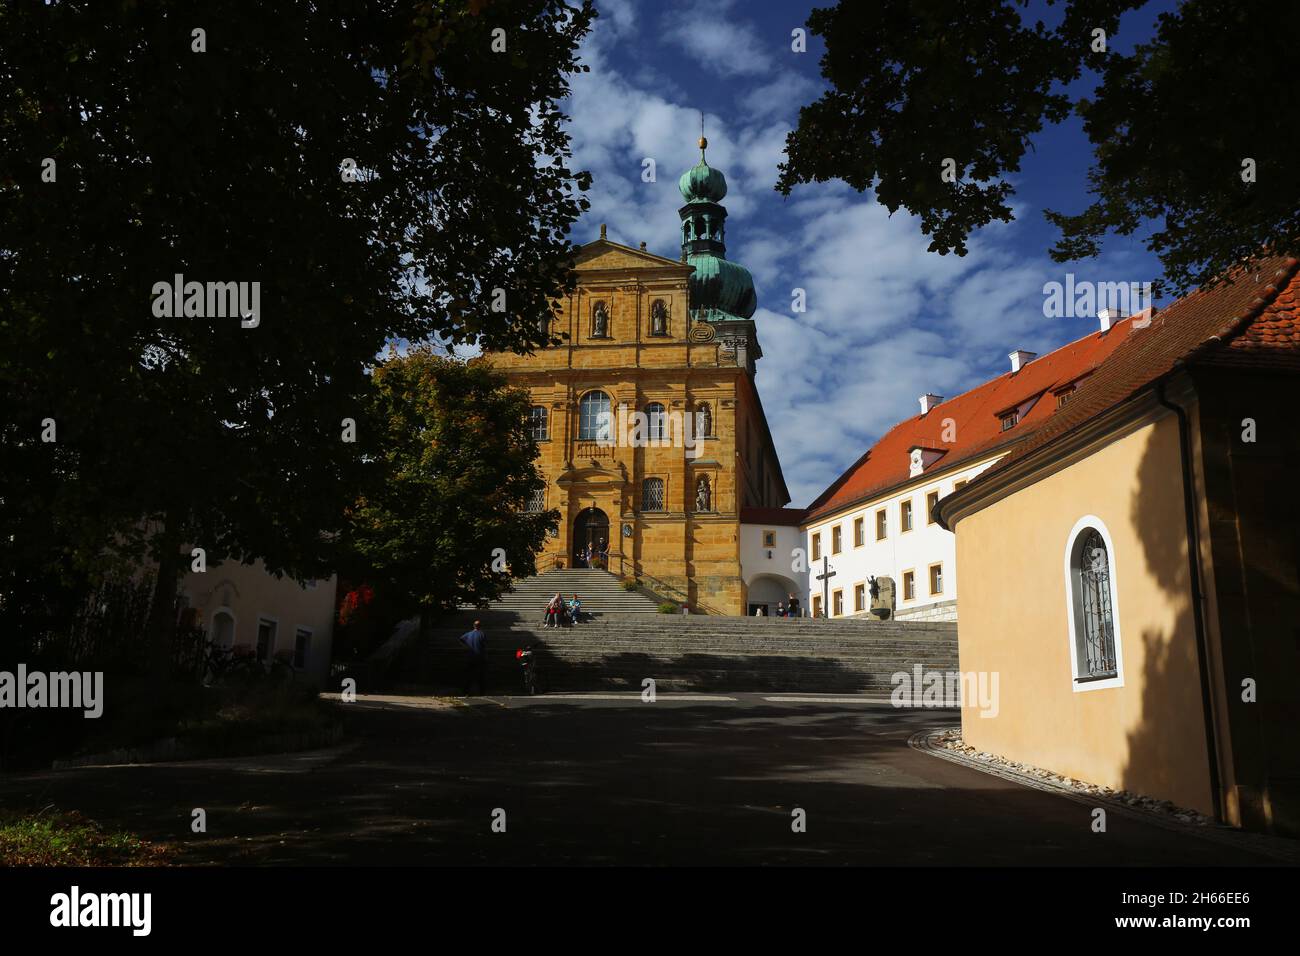 Wallfahrtskirche, Barockkirche, Amberg, ; Maria Hilf, Kirche,Bergkirche, Kirchturm in der Oberpfalz, Bayern! Banque D'Images